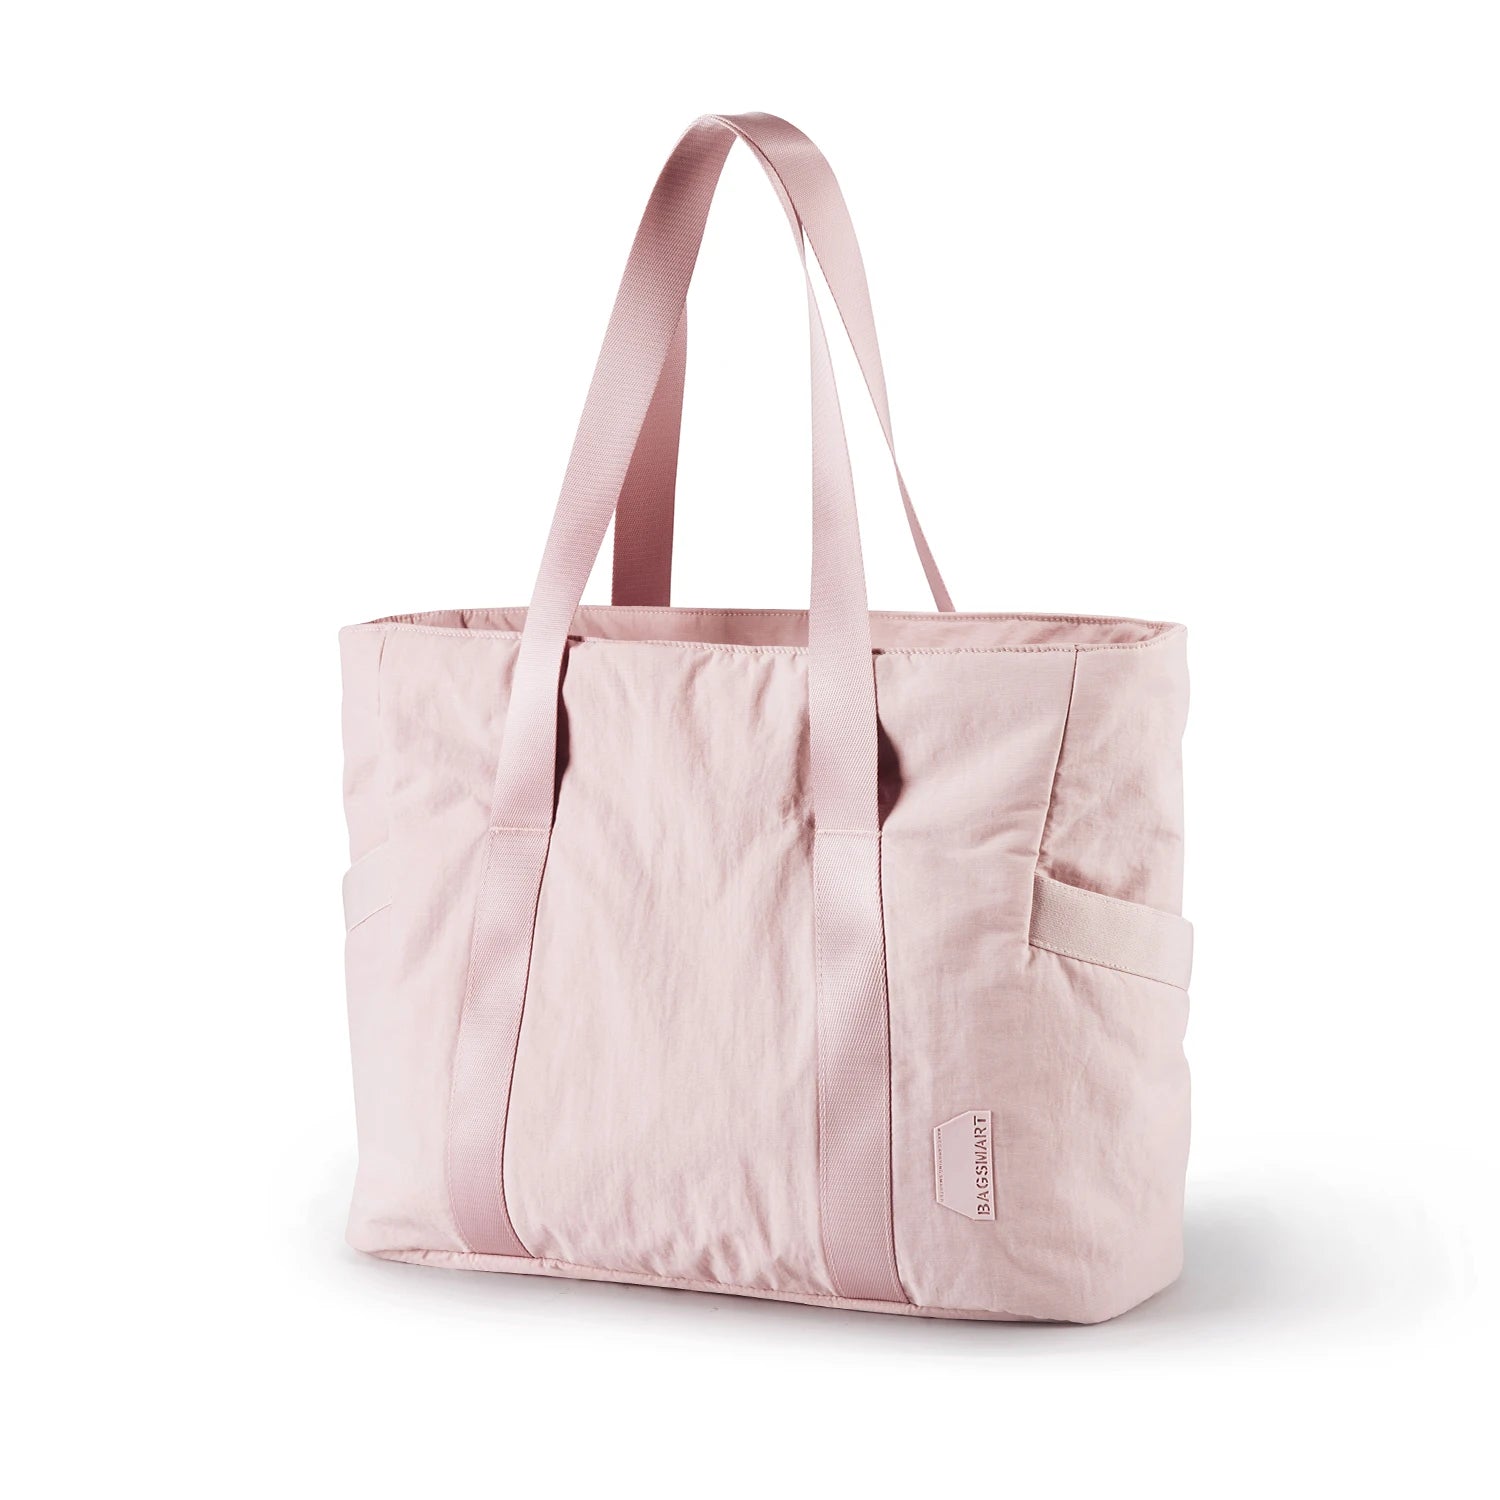 Large Capacity Women's Tote Bag pink L